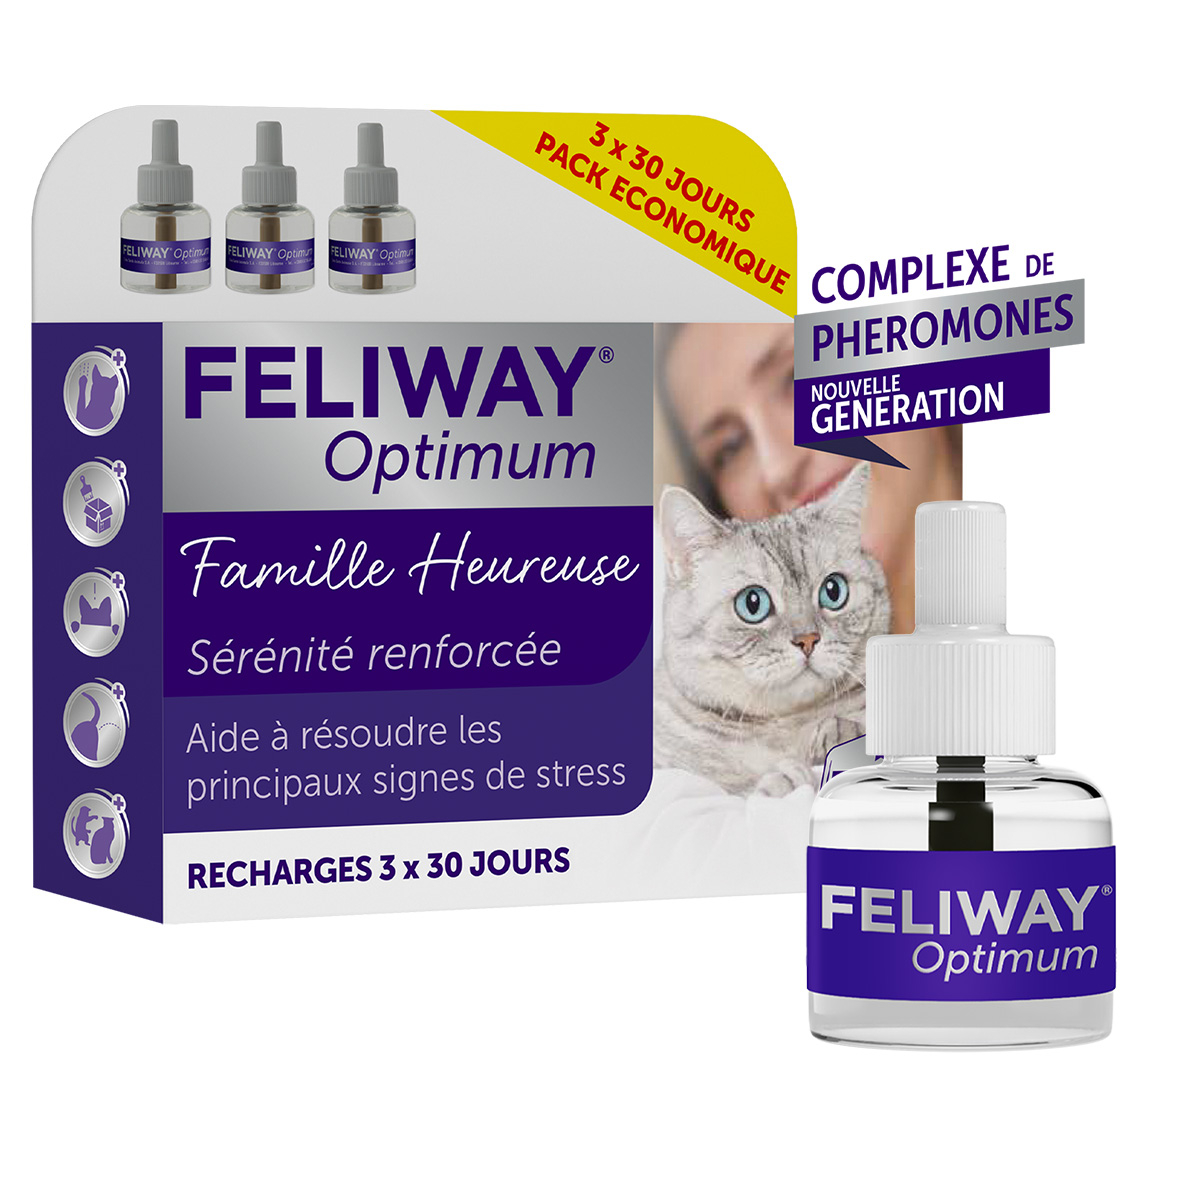 Recharge Feliway Optimum 30 jours